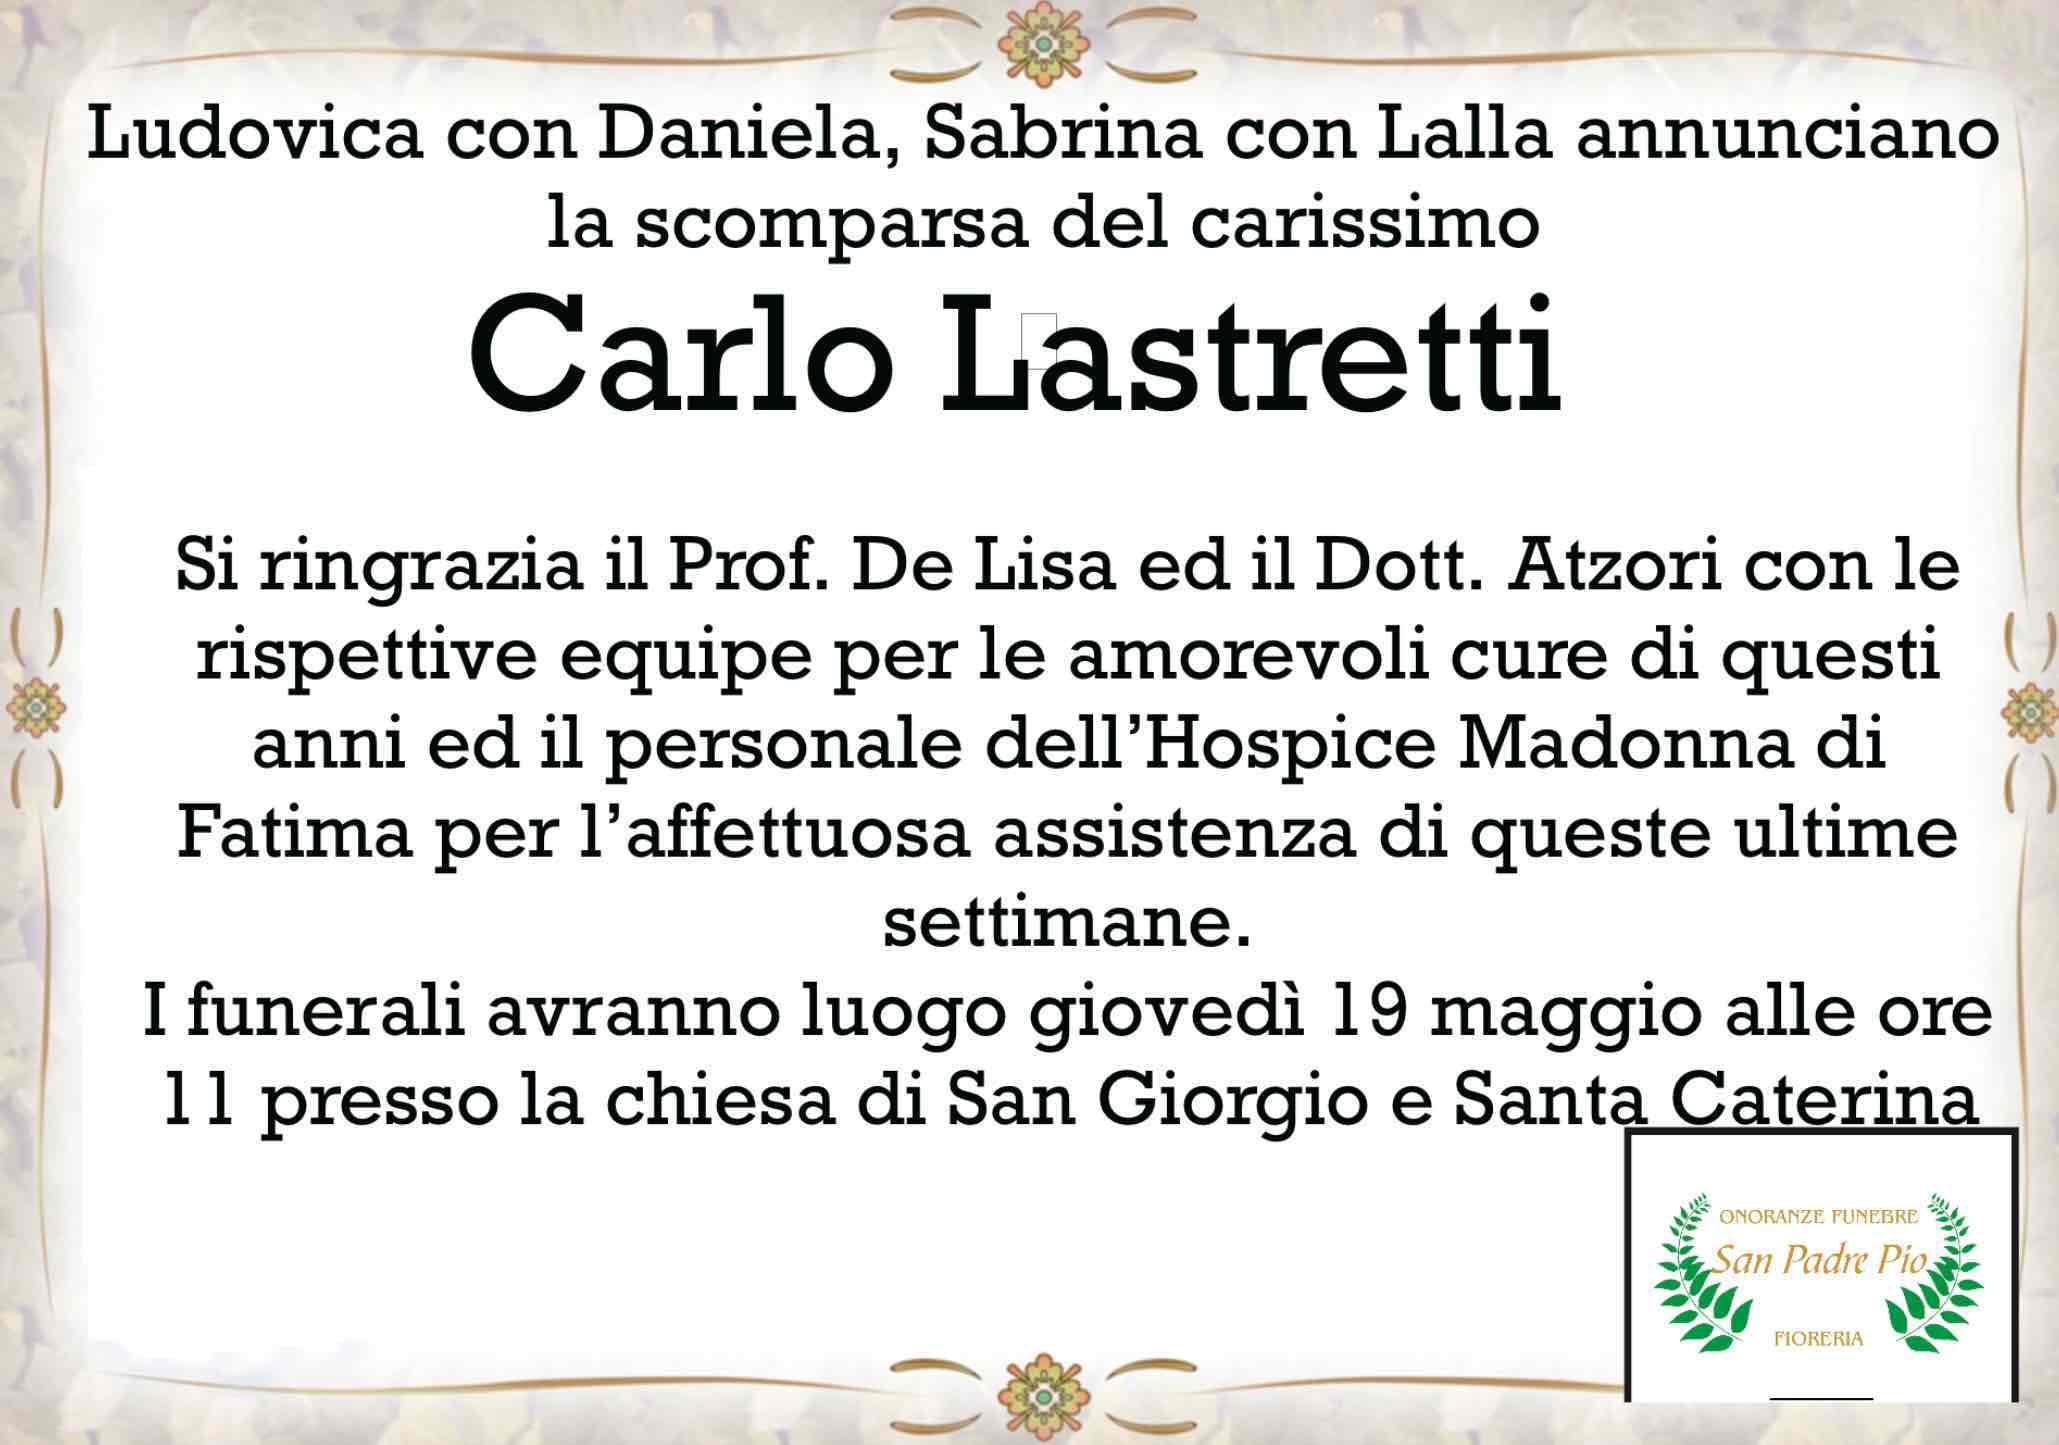 Carlo Lastretti